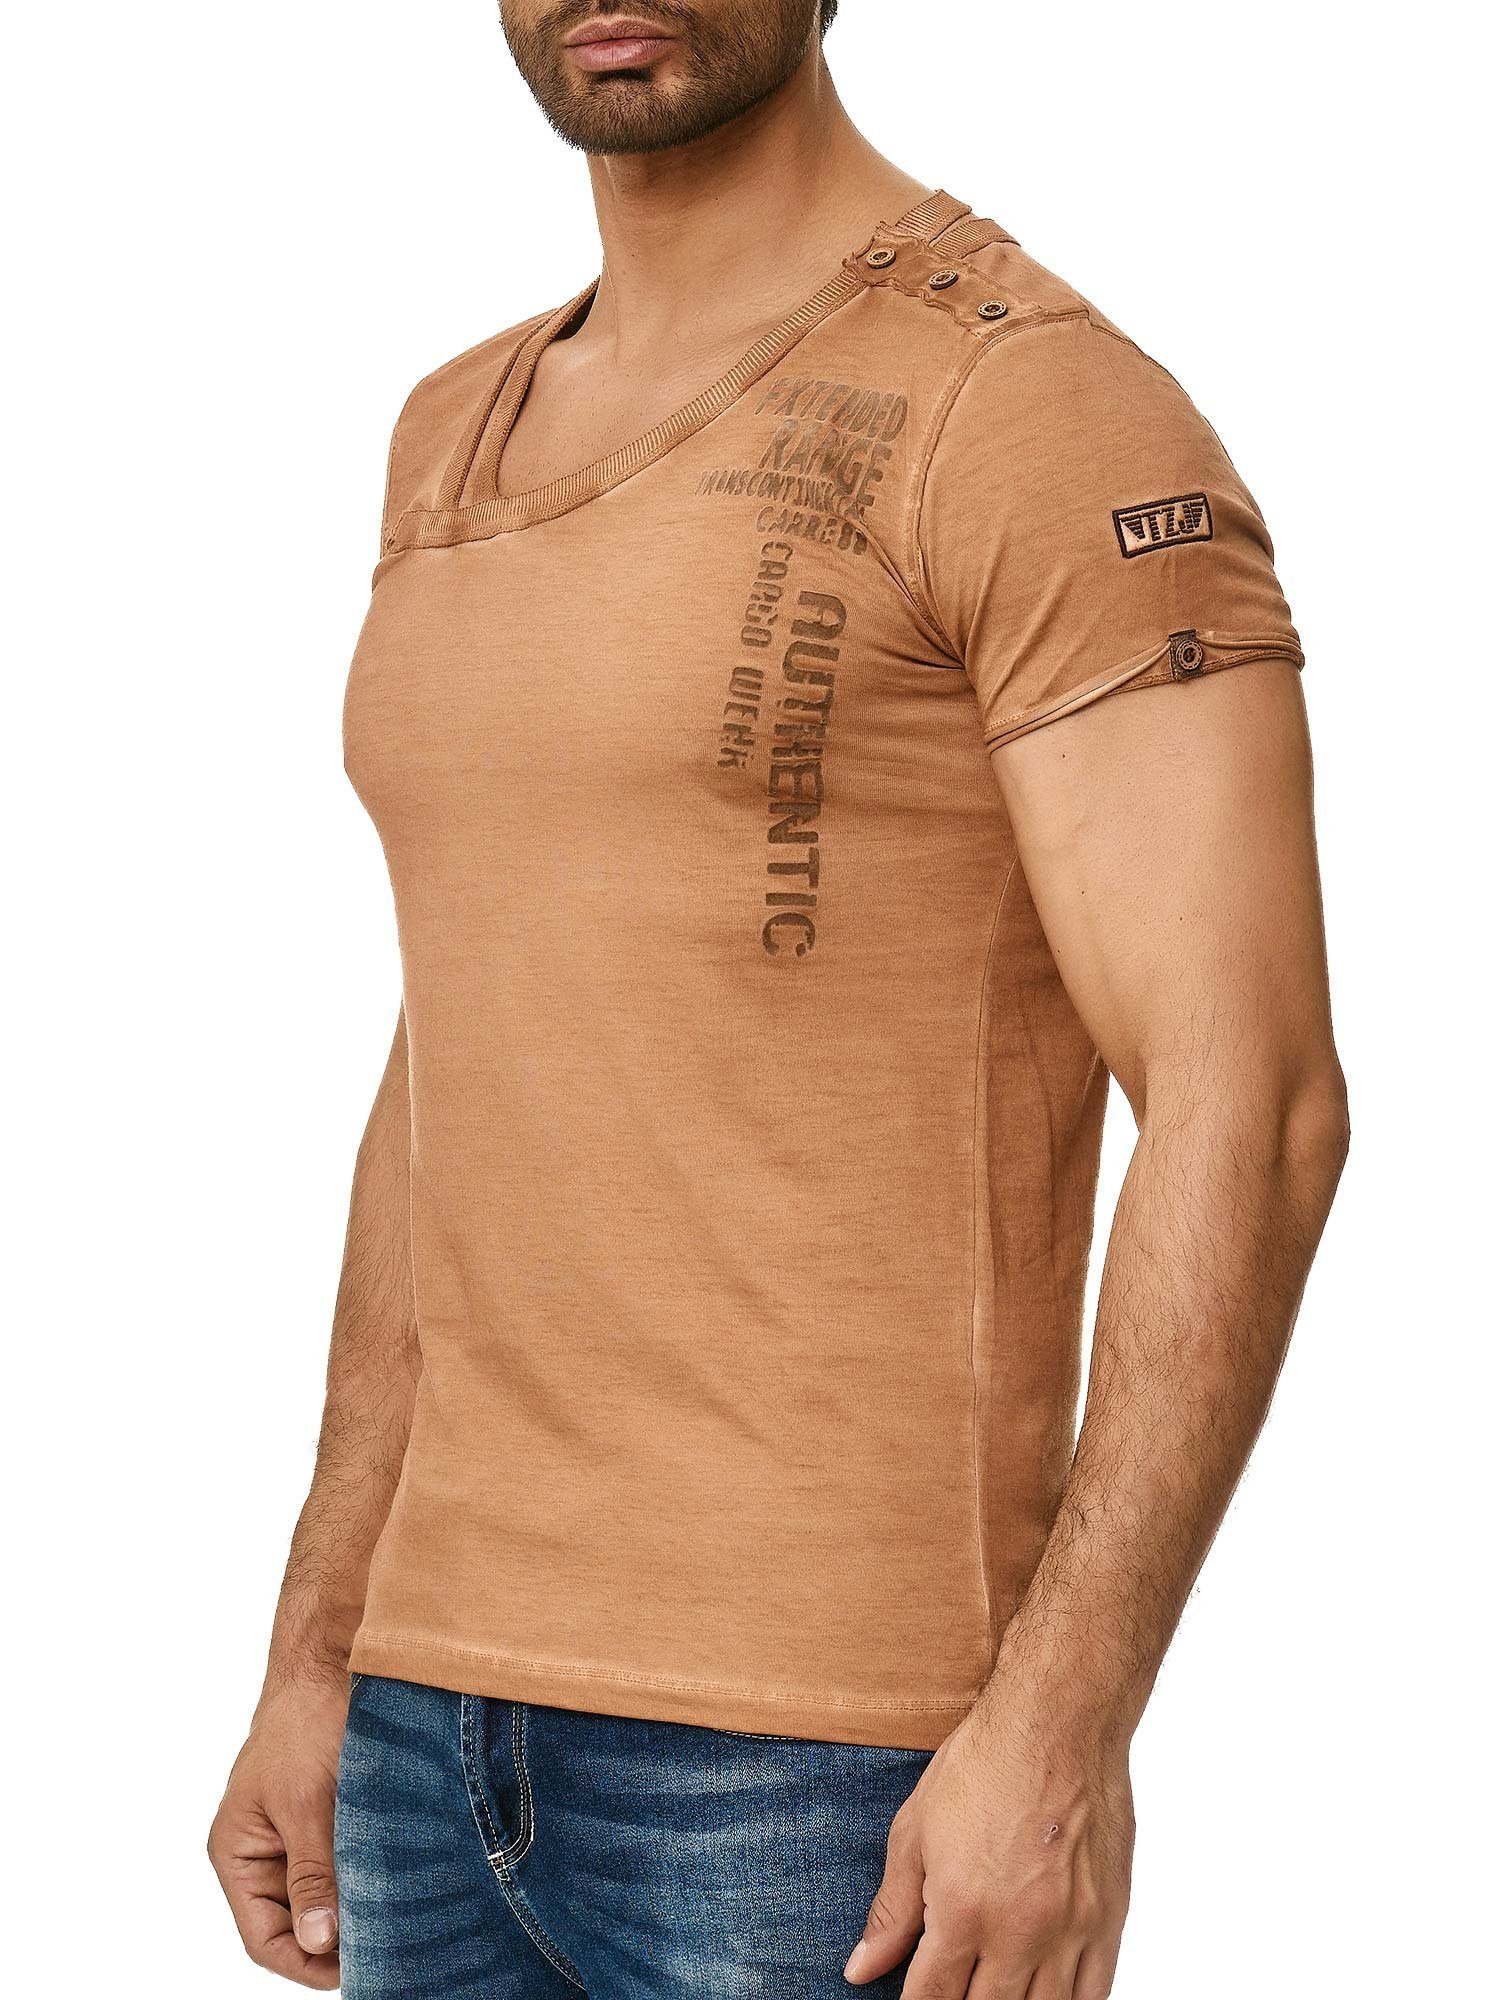 Tazzio T-Shirt 4022 in und Schulter mit Kragen Knopfleiste camel an Ölwaschung trendiger stylischem der